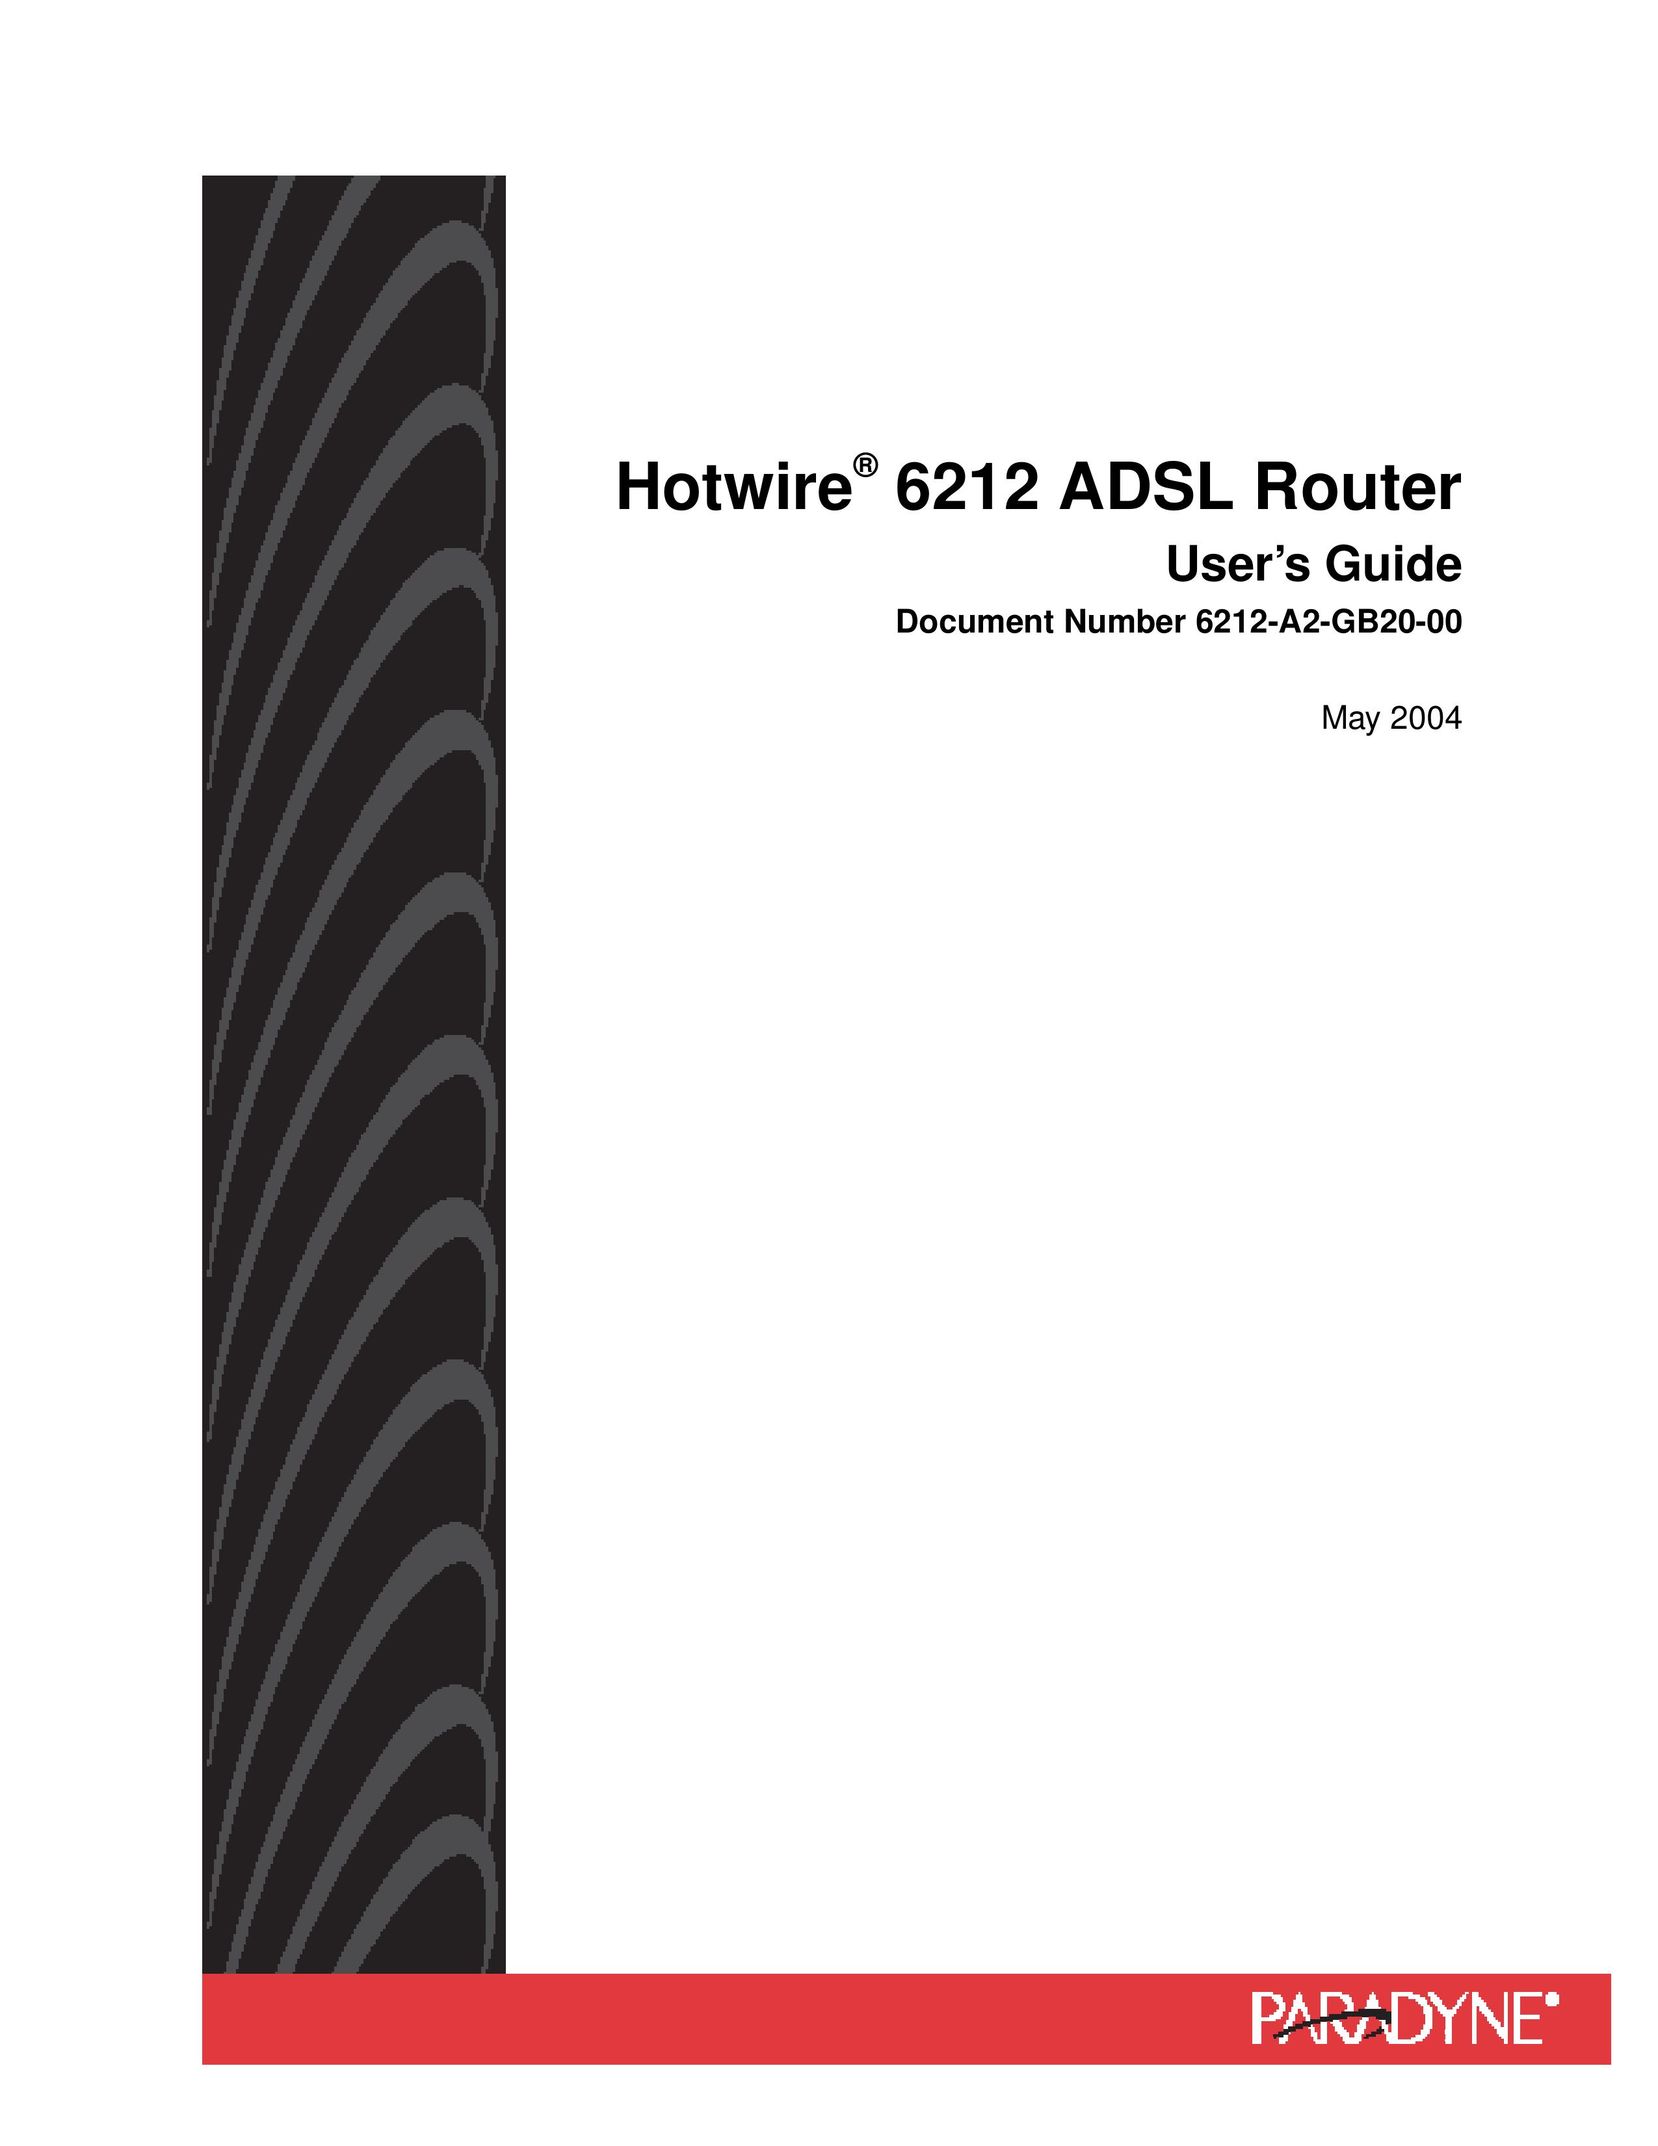 HP (Hewlett-Packard) 6212 Network Router User Manual